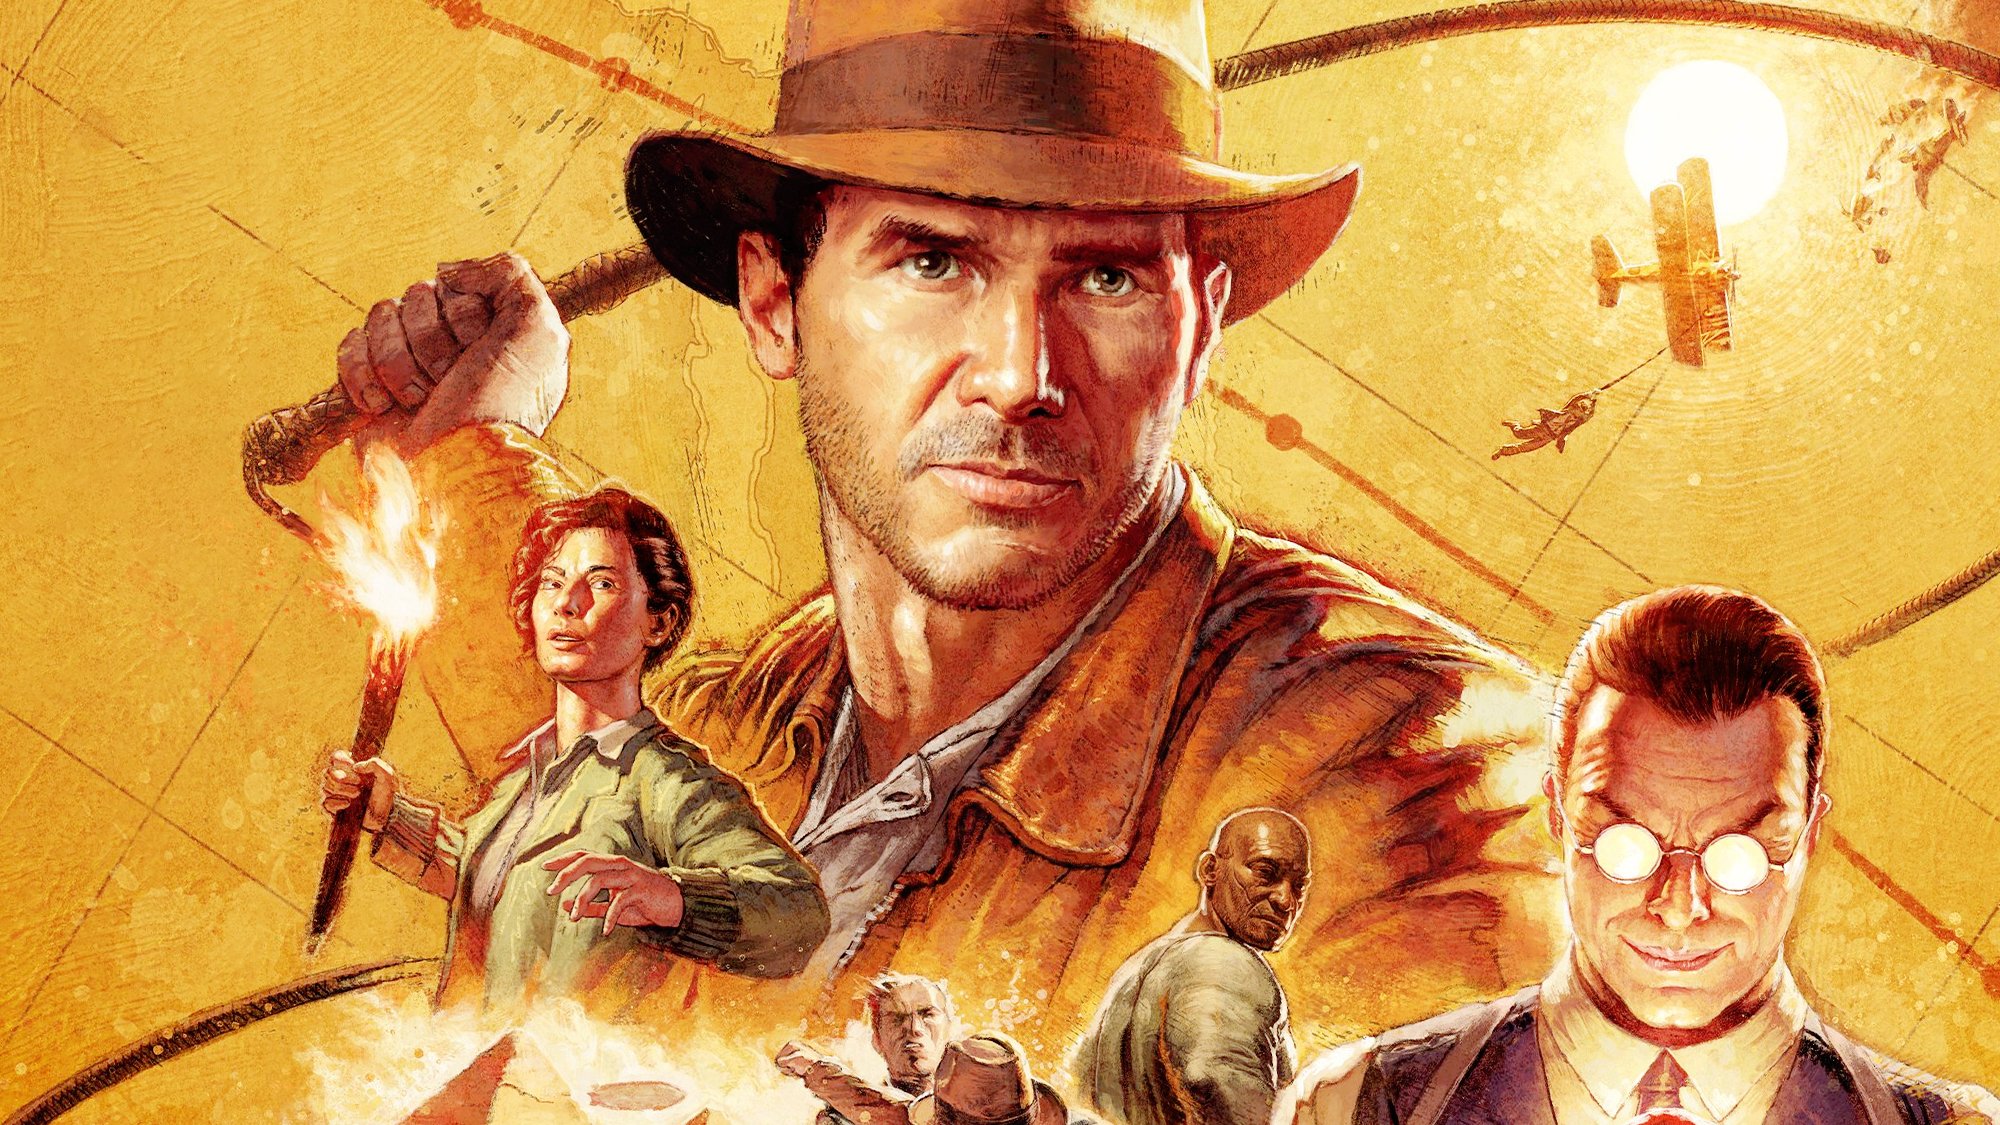 Indiana Jones dévoile un tout nouveau trailer qui fait honneur aux films